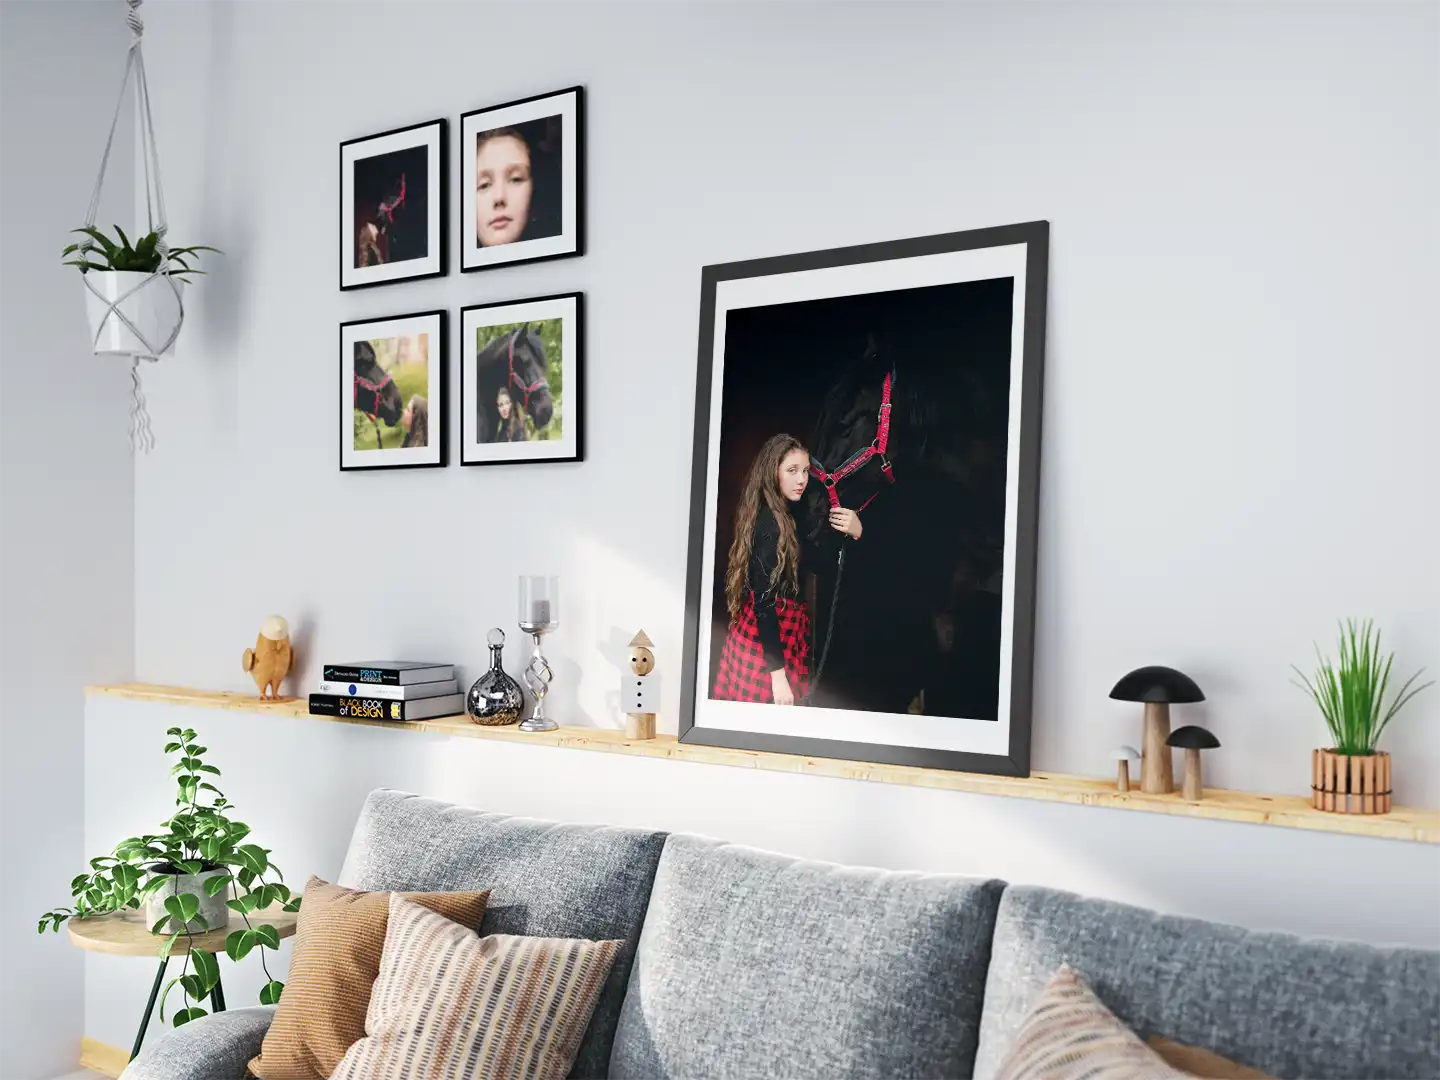 Przytulnie urządzony pokój z serią artystycznych fotografii dziecięcych na ścianie, nad komfortową sofą z ozdobnymi poduszkami, podkreślający domowy nastrój i miłość do detali.